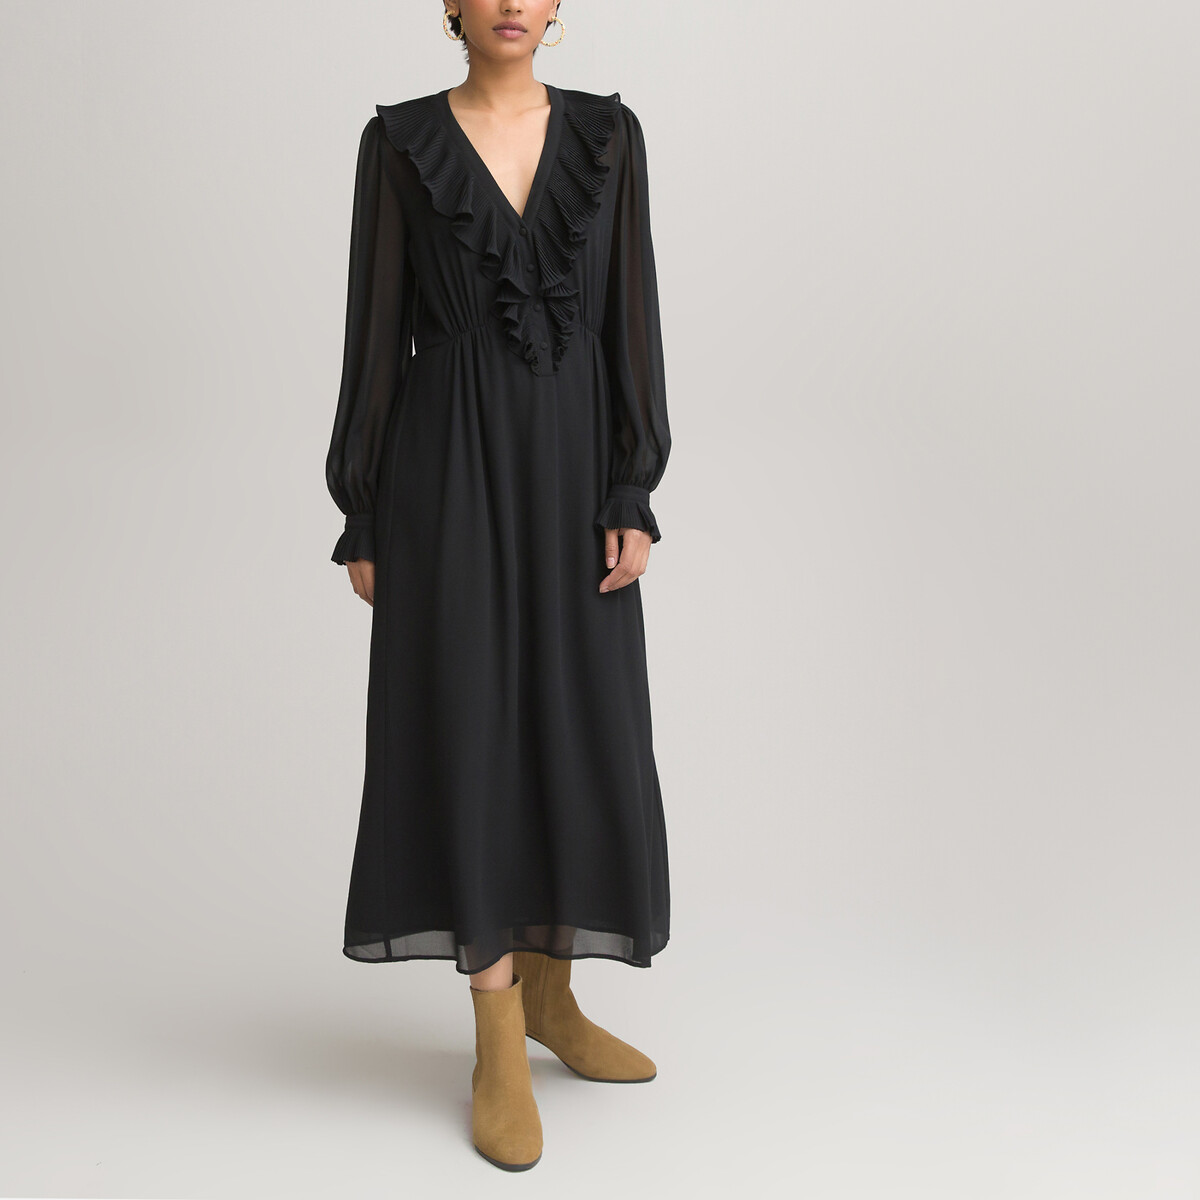 Платье LaRedoute Длинное с V-образным вырезом длинные рукава 46 черный, размер 46 - фото 2